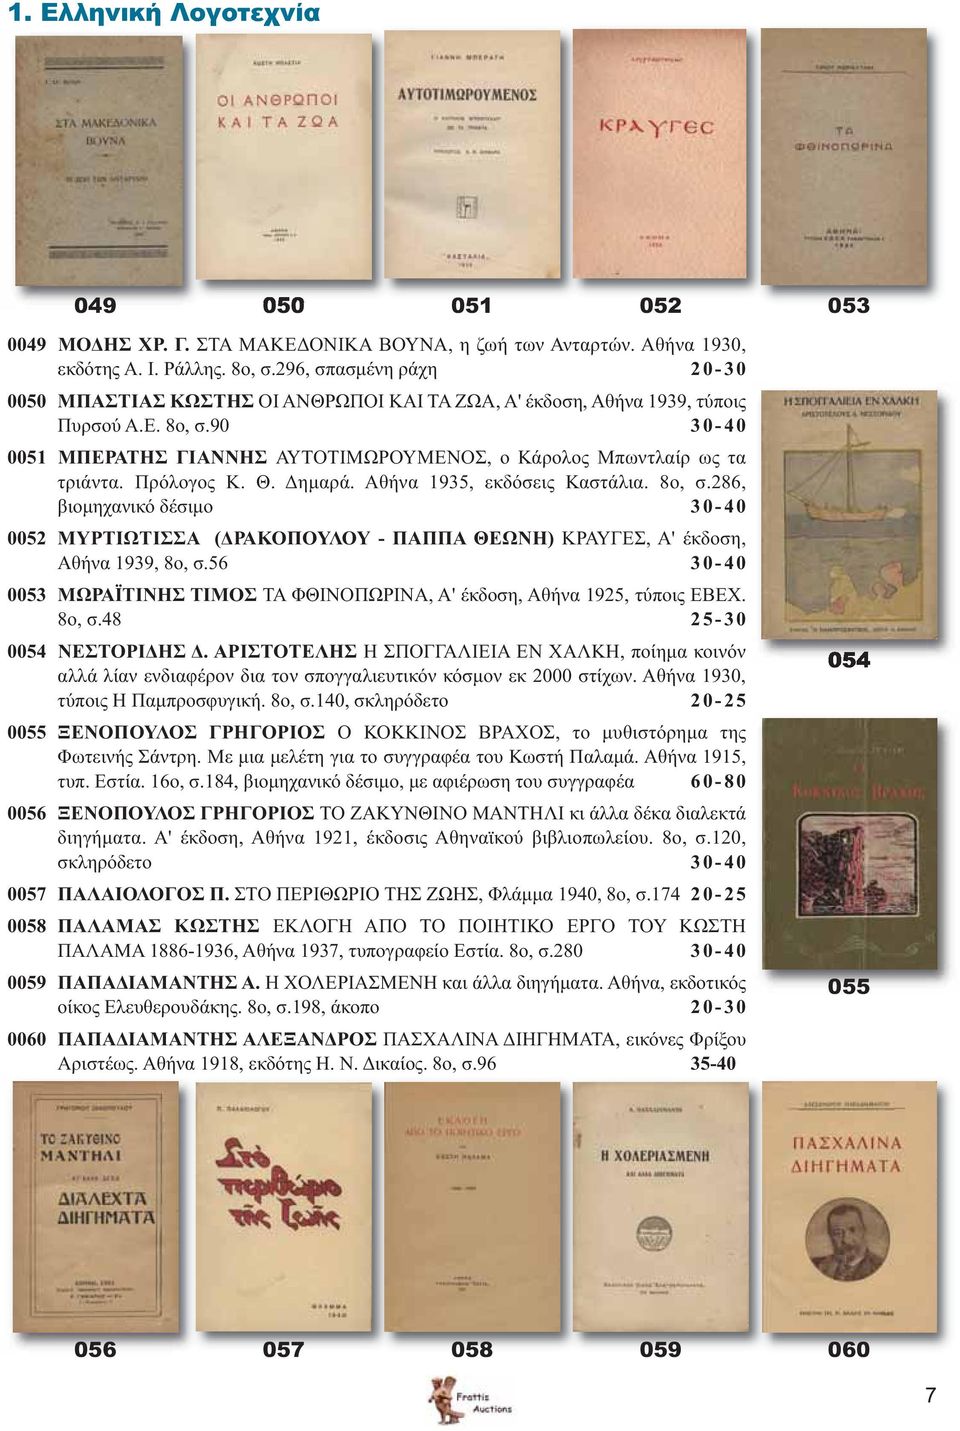 90 30-40 0051 ΜΠΕΡΑΤΗΣ ΓΙΑΝΝΗΣ ΑΥΤΟΤΙΜΩΡΟΥΜΕΝΟΣ, ο Κάρολος Μπωντλαίρ ως τα τριάντα. Πρόλογος Κ. Θ. Δημαρά. Αθήνα 1935, εκδόσεις Καστάλια. 8ο, σ.